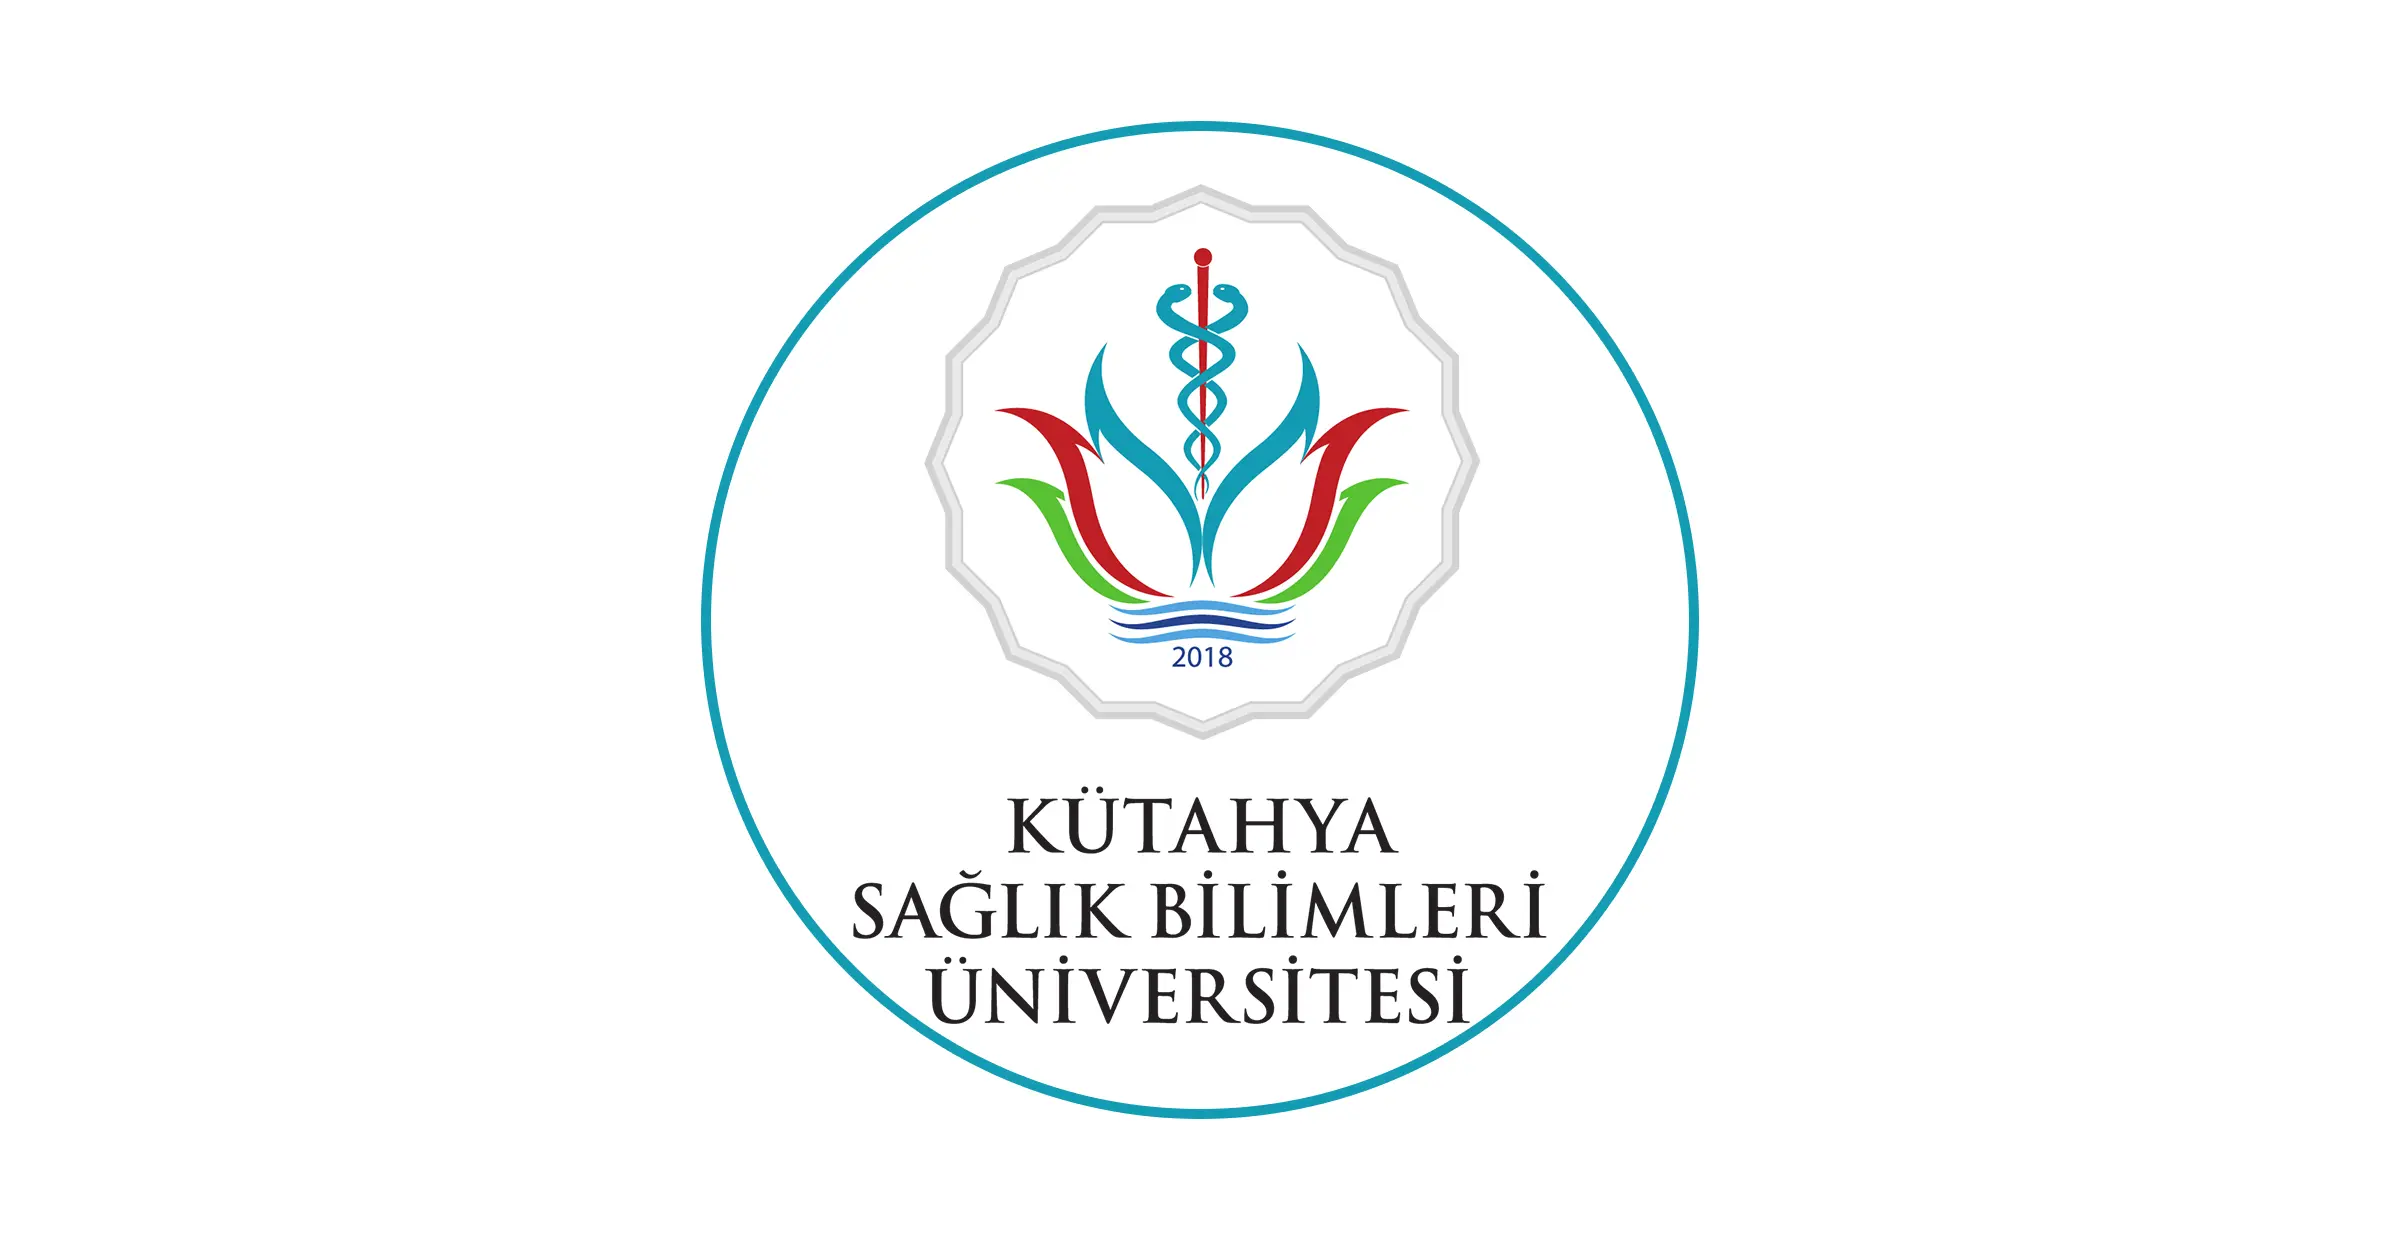 تأسست جامعة كوتاهيا للعلوم الصحية Kütahya Sağlık Bilimleri Üniversitesi في 2018 في كوتاهيا وهي جامعة حكومية لغة التدريس فيها باللغة التركية